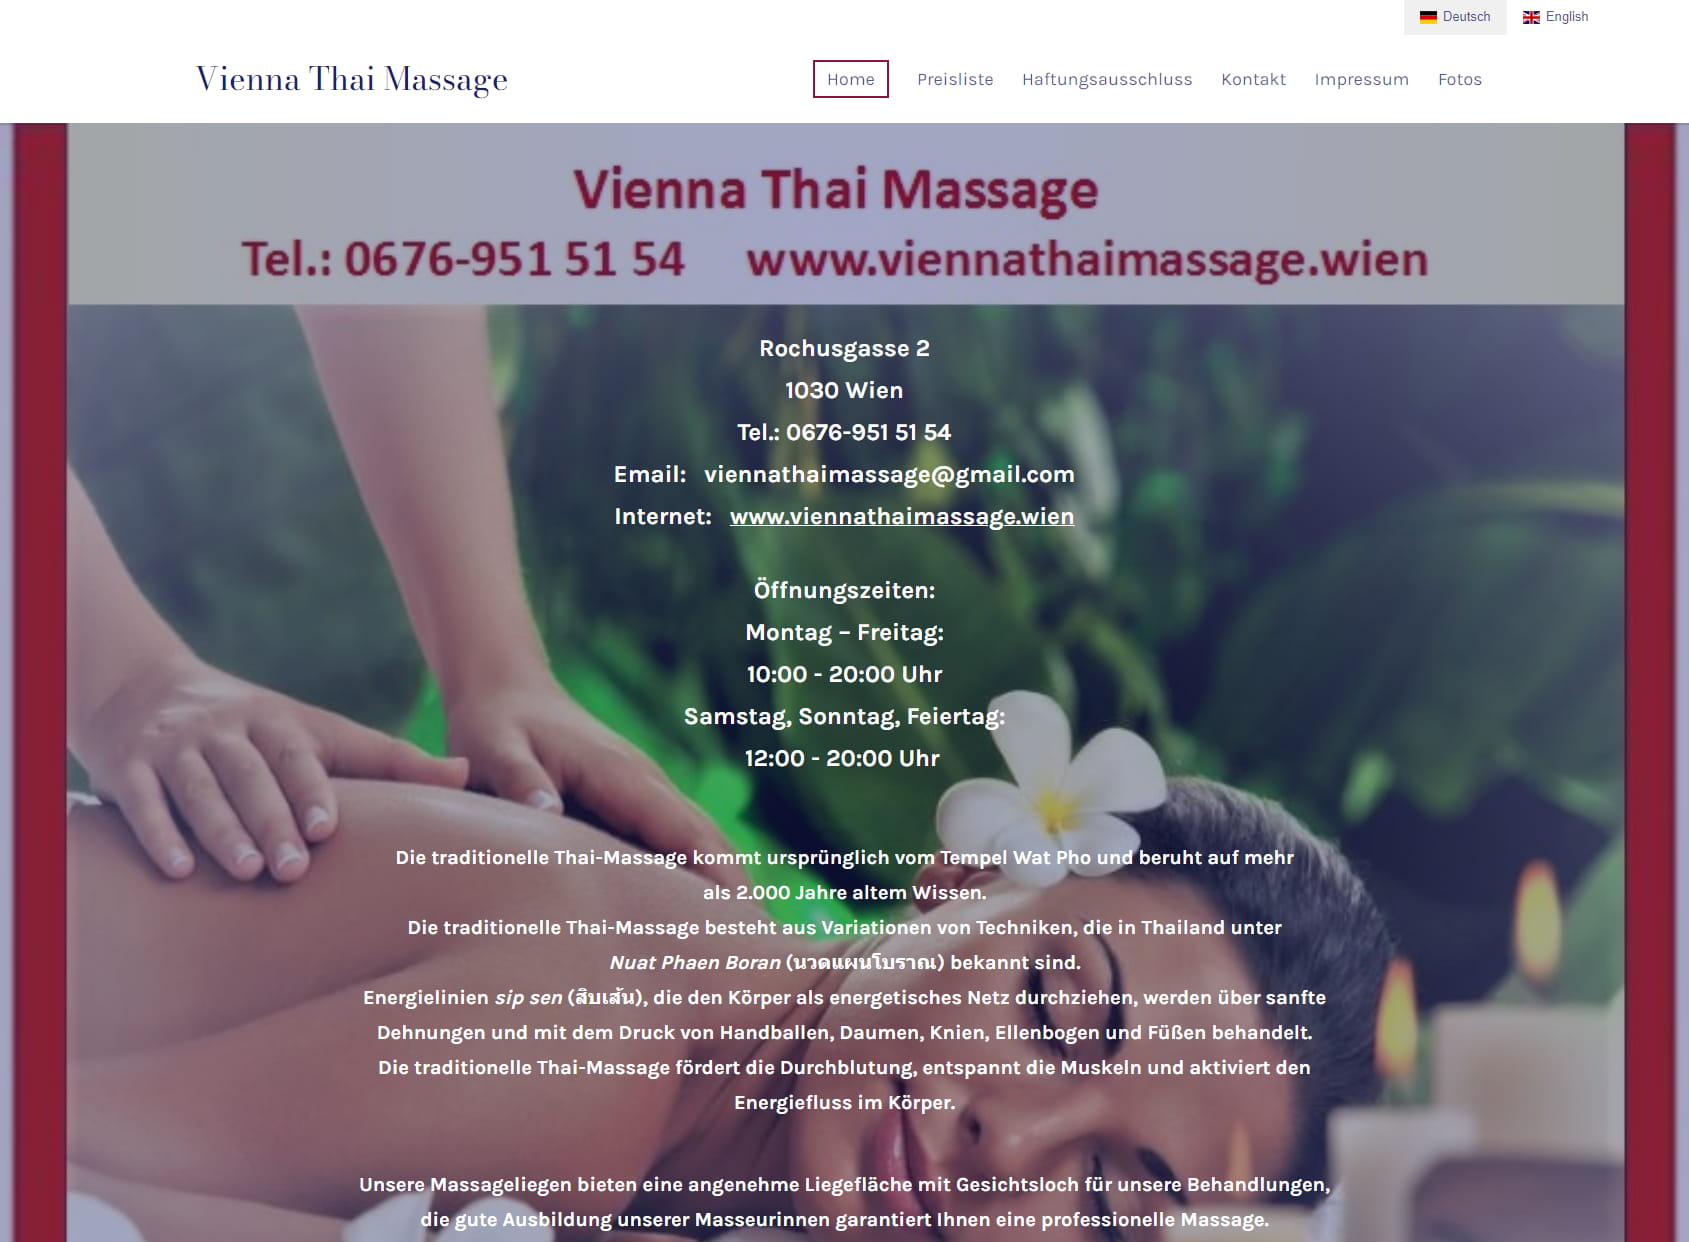 Vienna Thai Massage